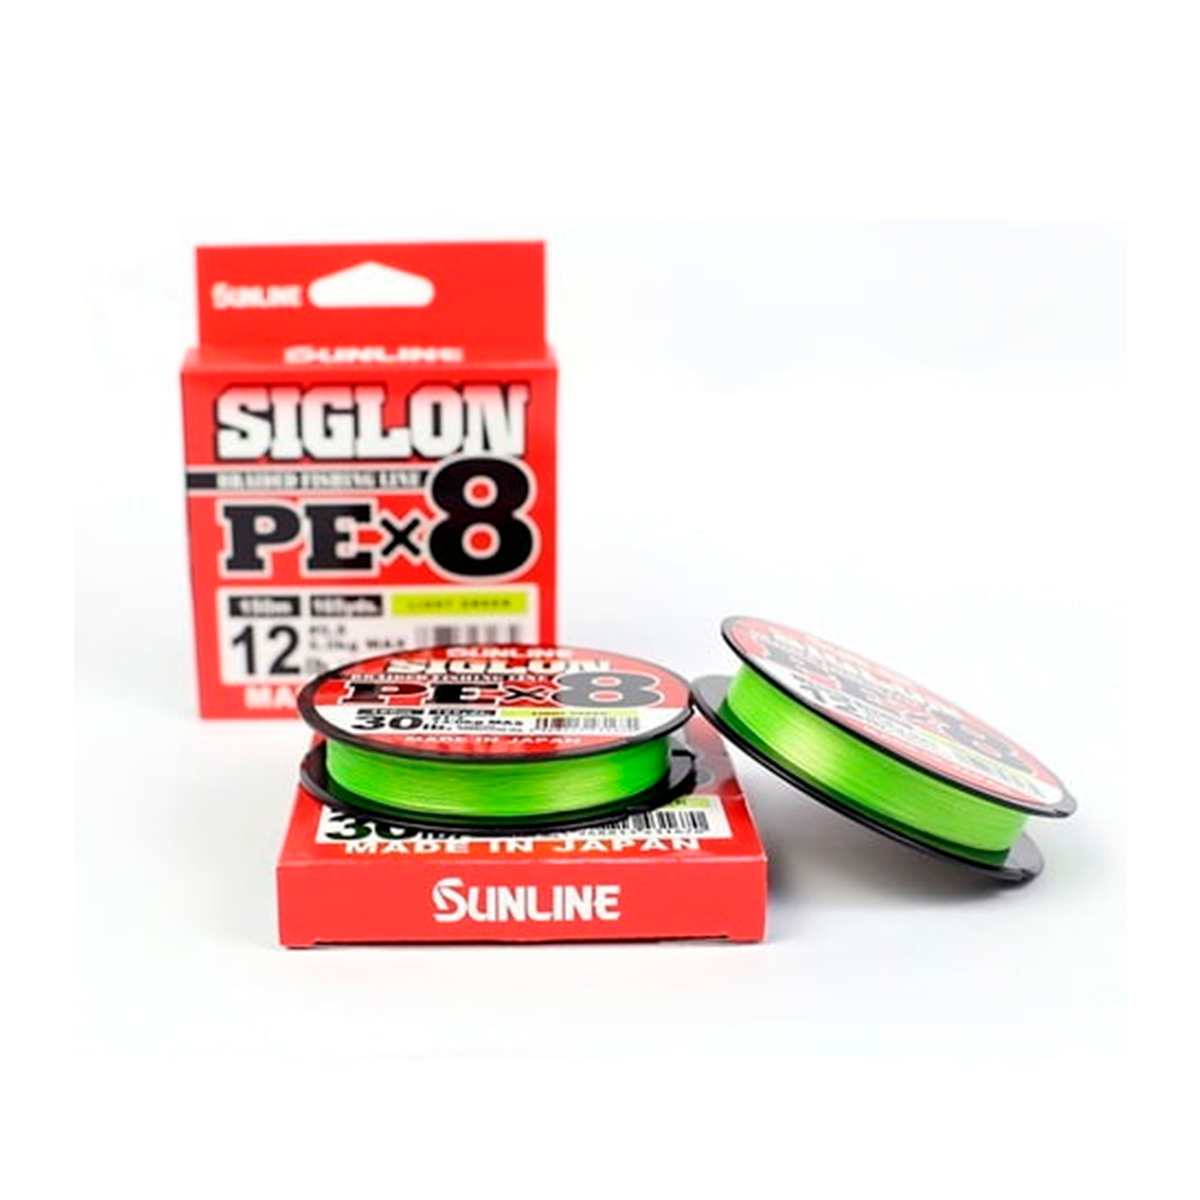 Sunline-Siglon-PE-X8